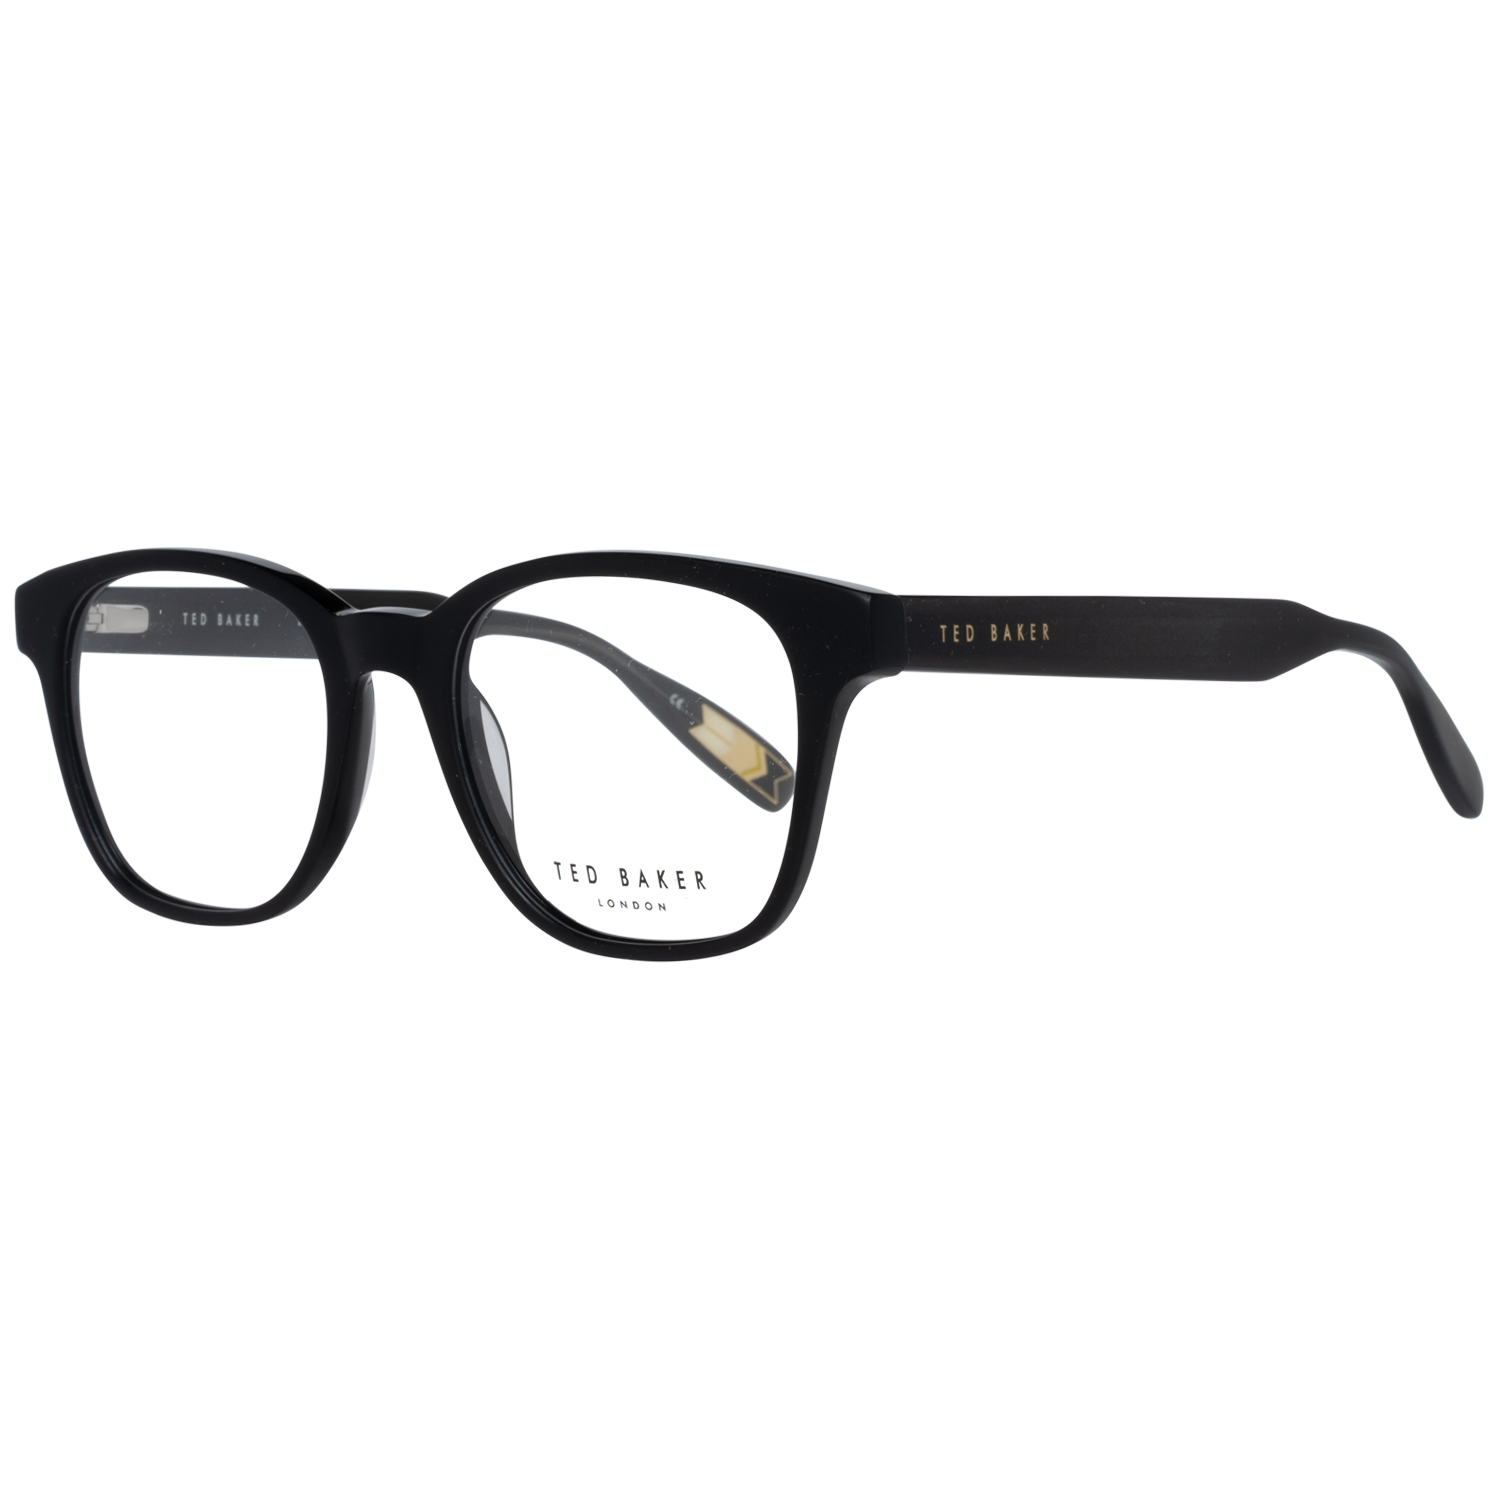 Ted Baker Frames Ted Baker Optical Frame Prescription Glasses TB8211 001 51 Magali Eyeglasses Eyewear UK USA Australia 